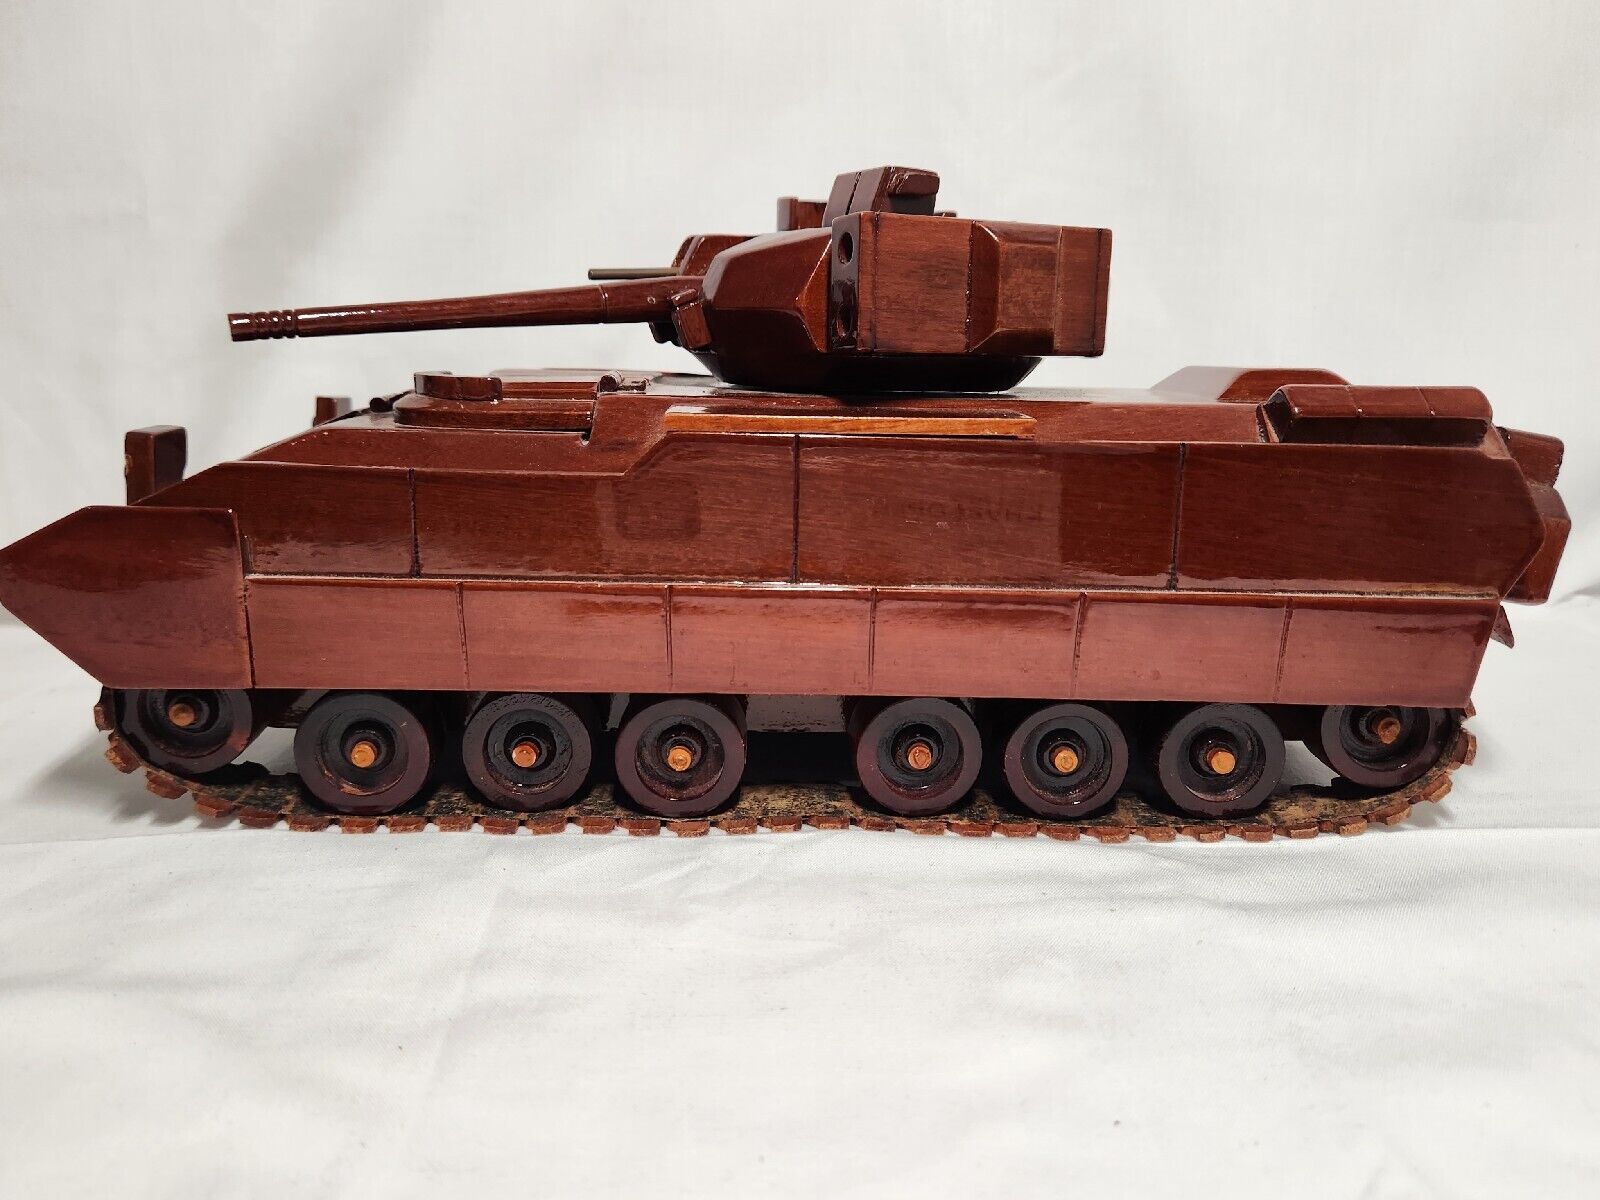 Natural Wood Finish M2 Bradley IFV Tank Model - Artisanal Craftsmanship